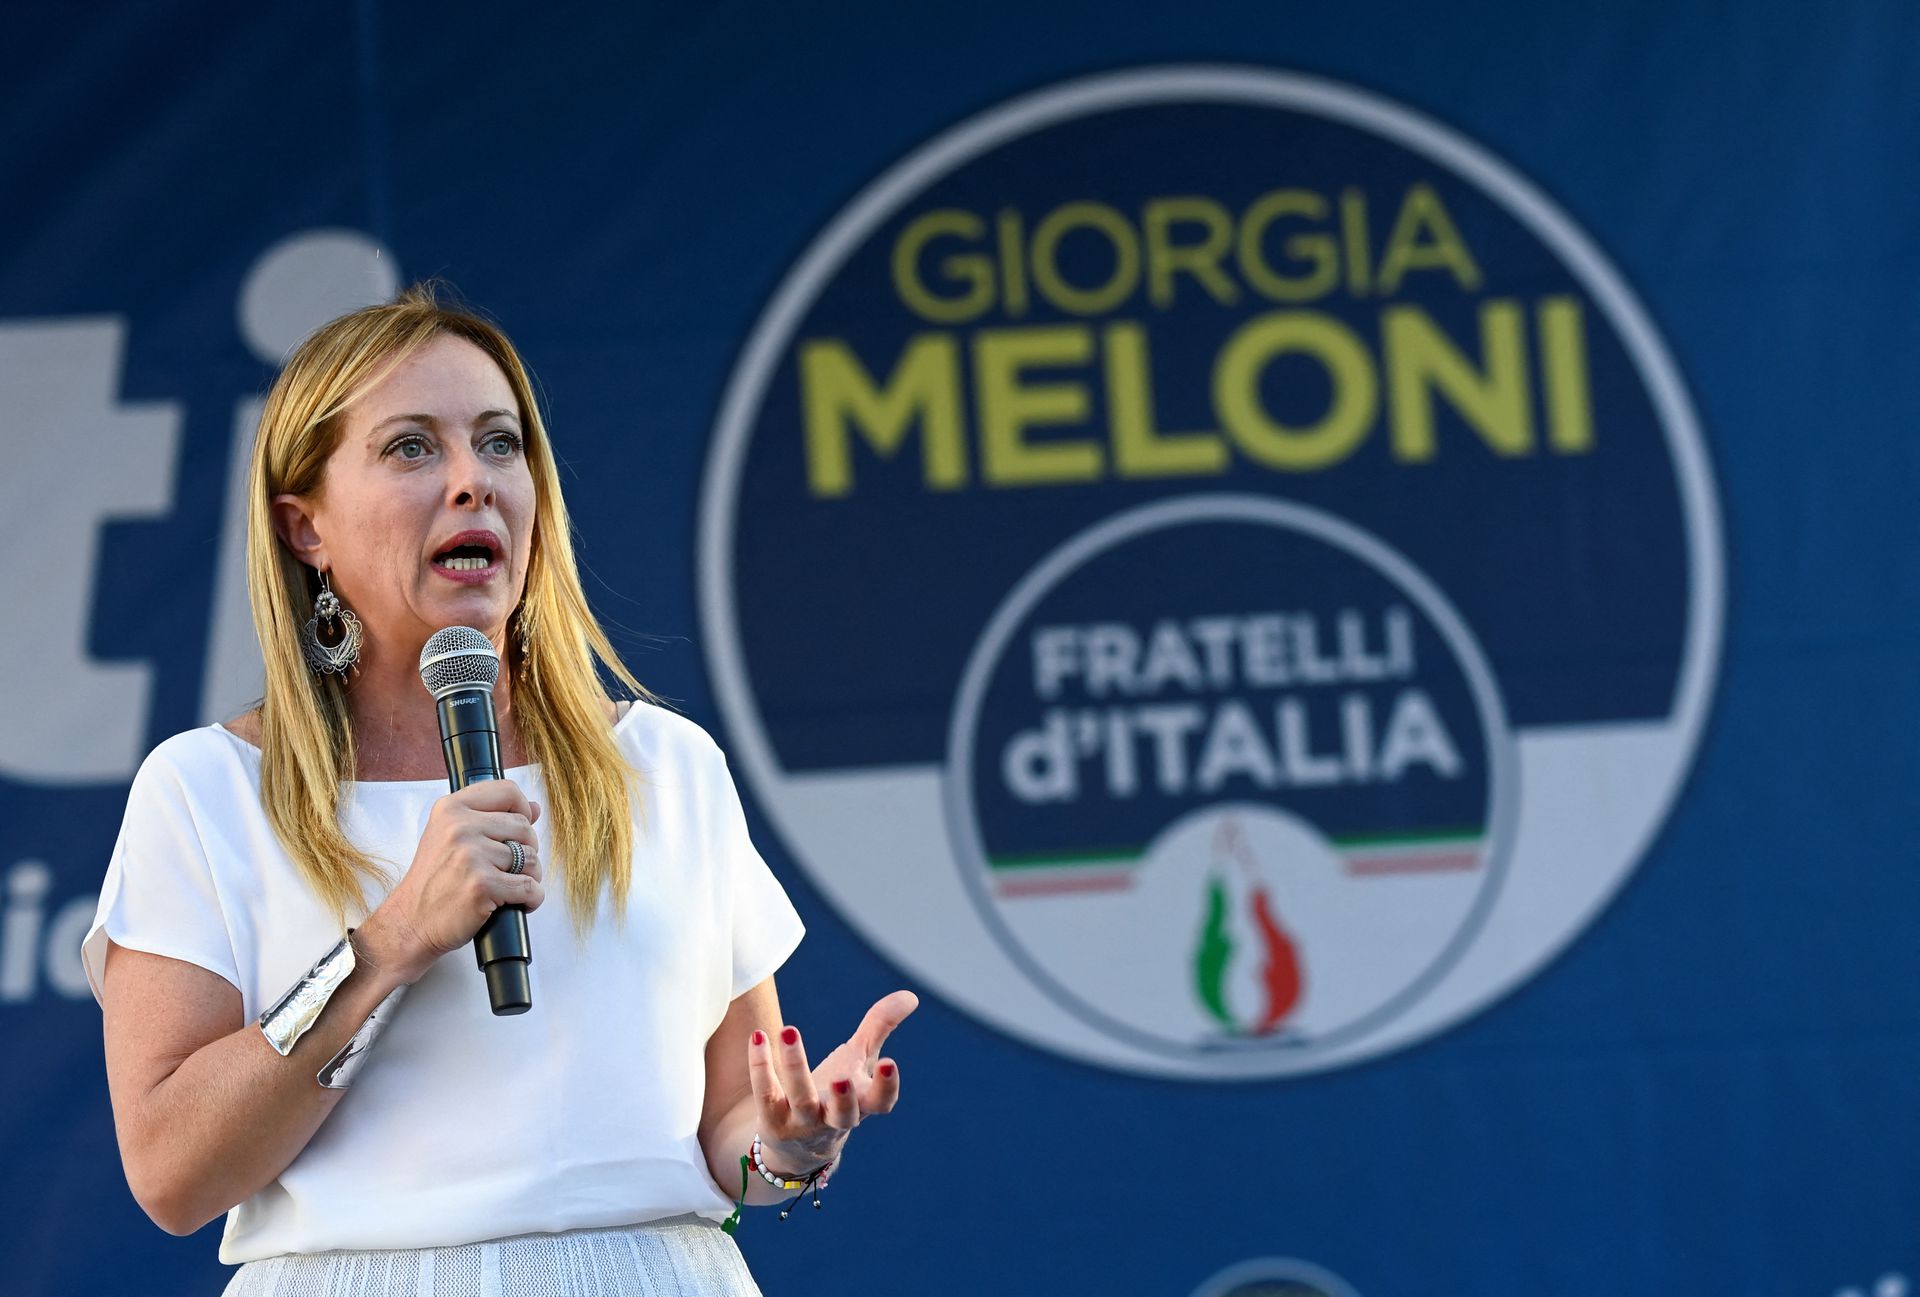 Italia: Aumento del deficit annunciato da Giorgia Meloni – Posta Economica